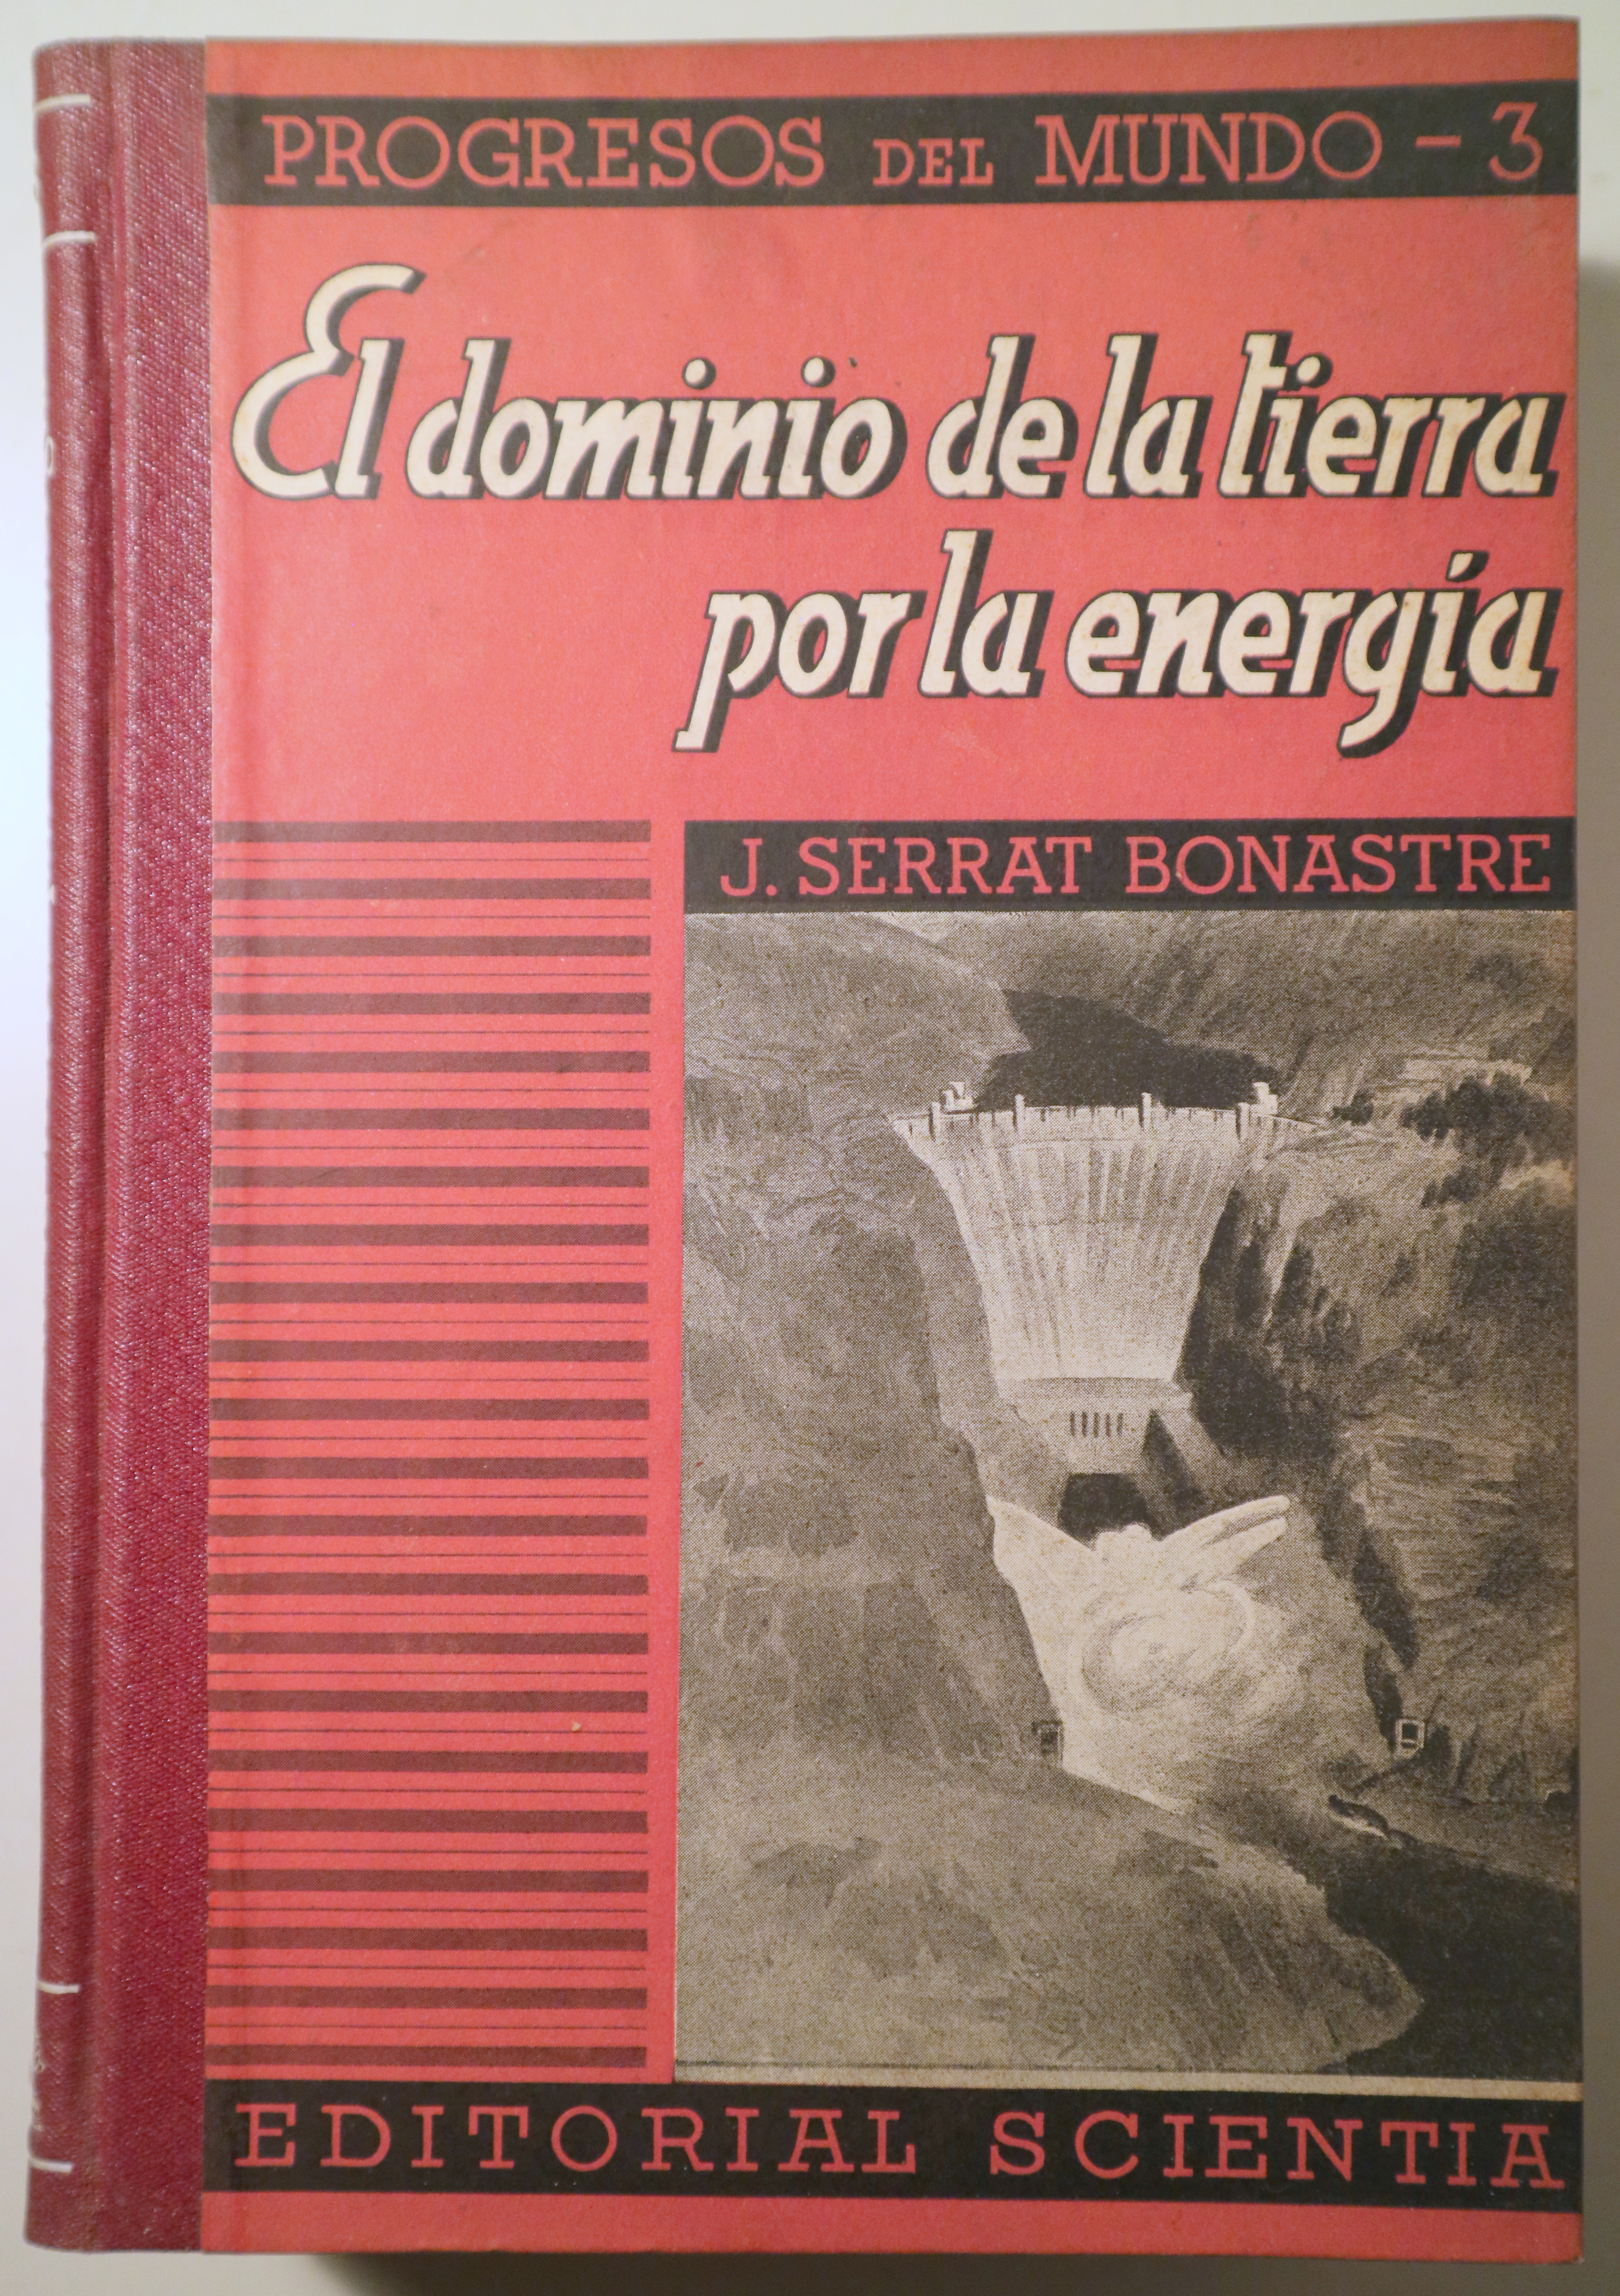 EL DOMINIO DE LA TIERRA POR LA ENERGÍA - Barcelona 1943 - Ilustrado